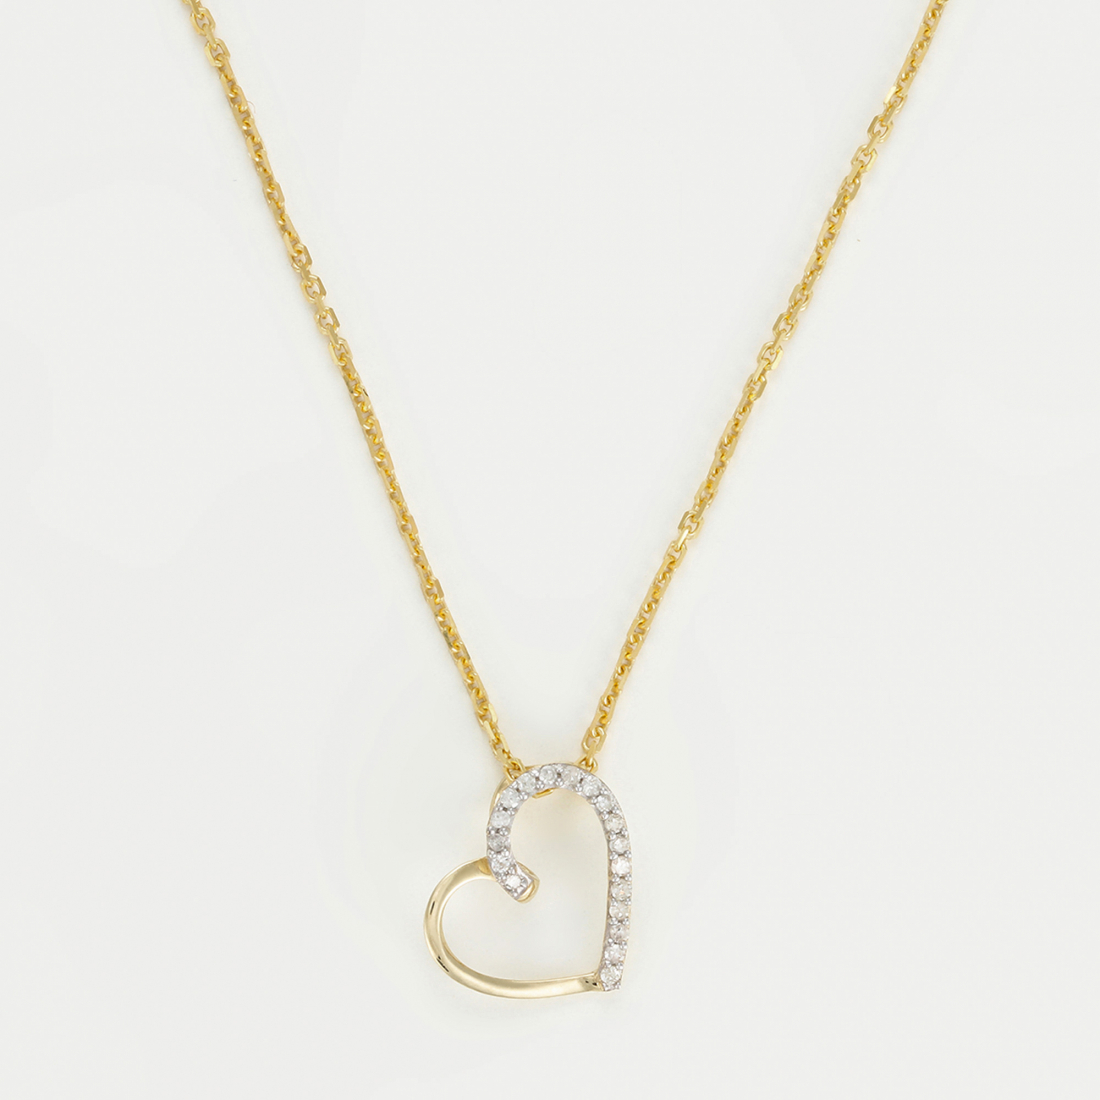 Women's 'Coeur Précieux' Pendant with chain